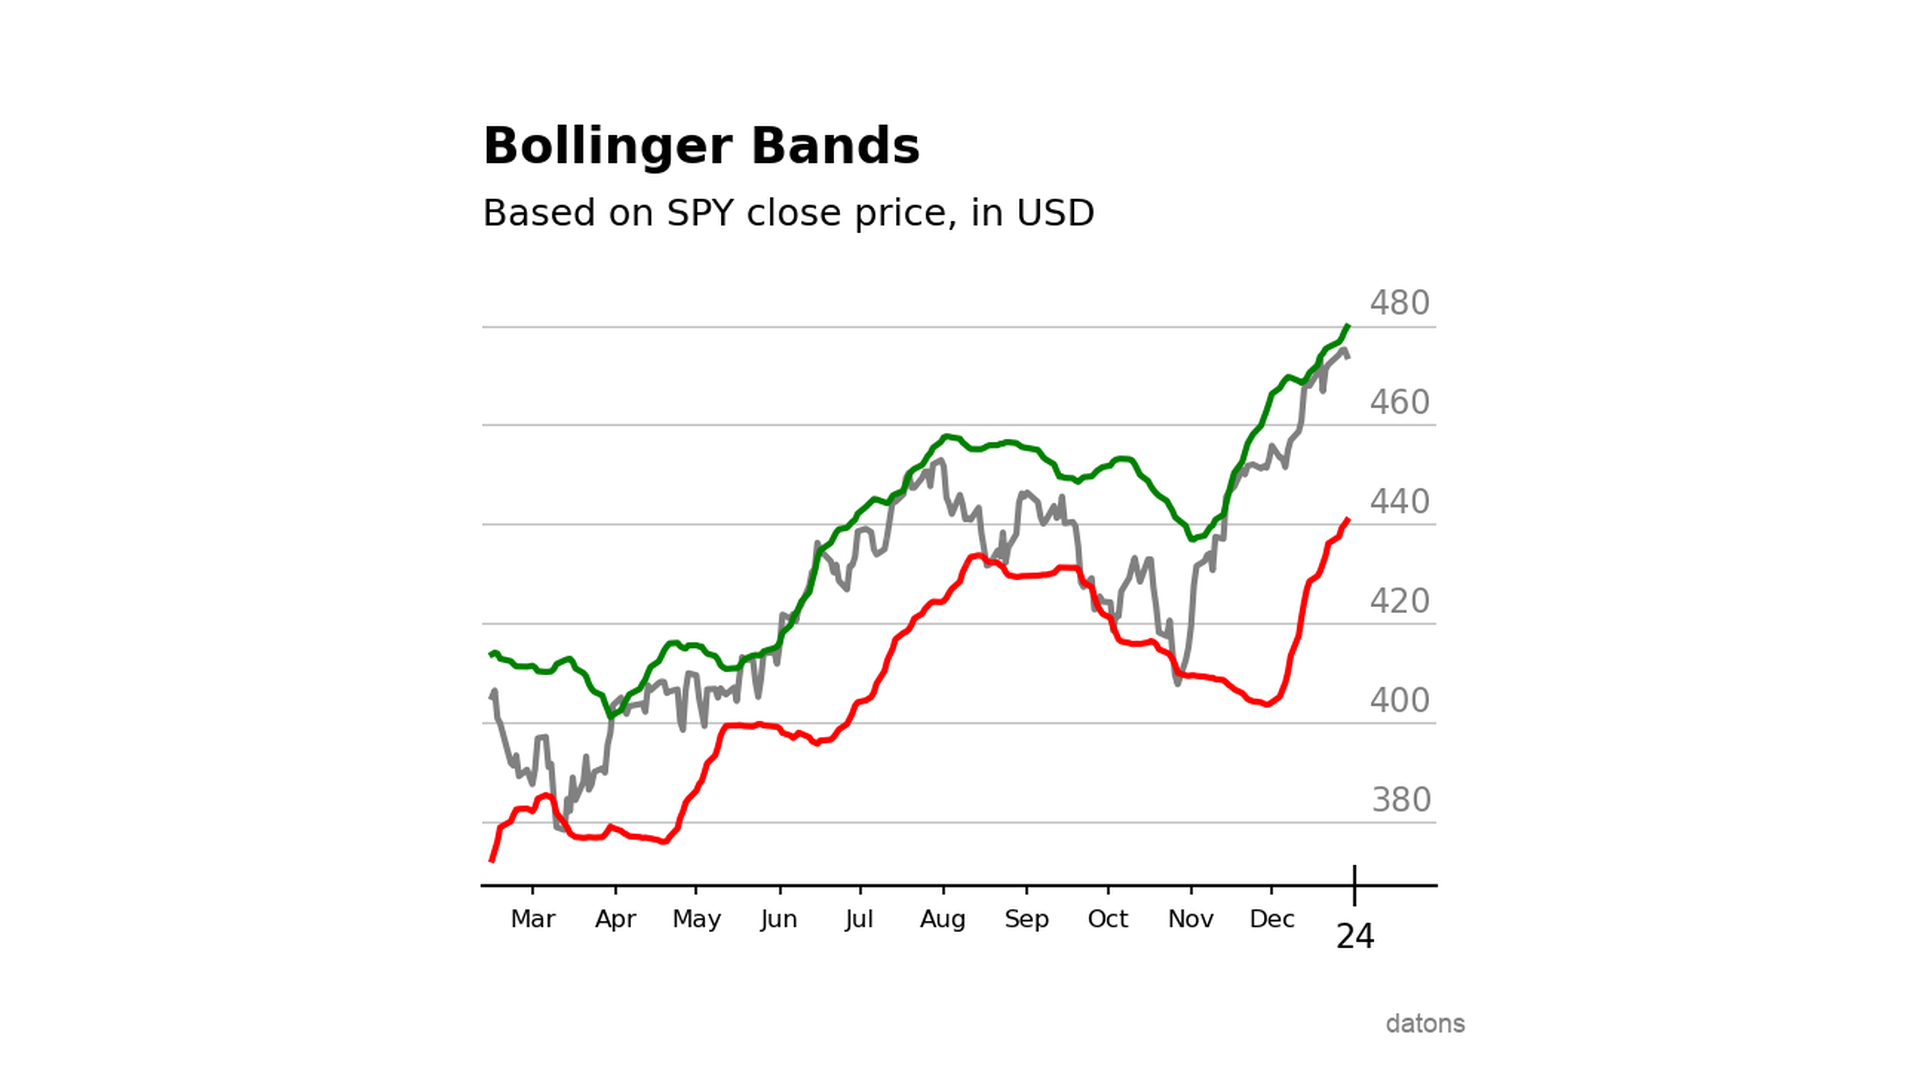 Cálculo de Bandas de Bollinger para el S&P500, mostrando bandas superior e inferior